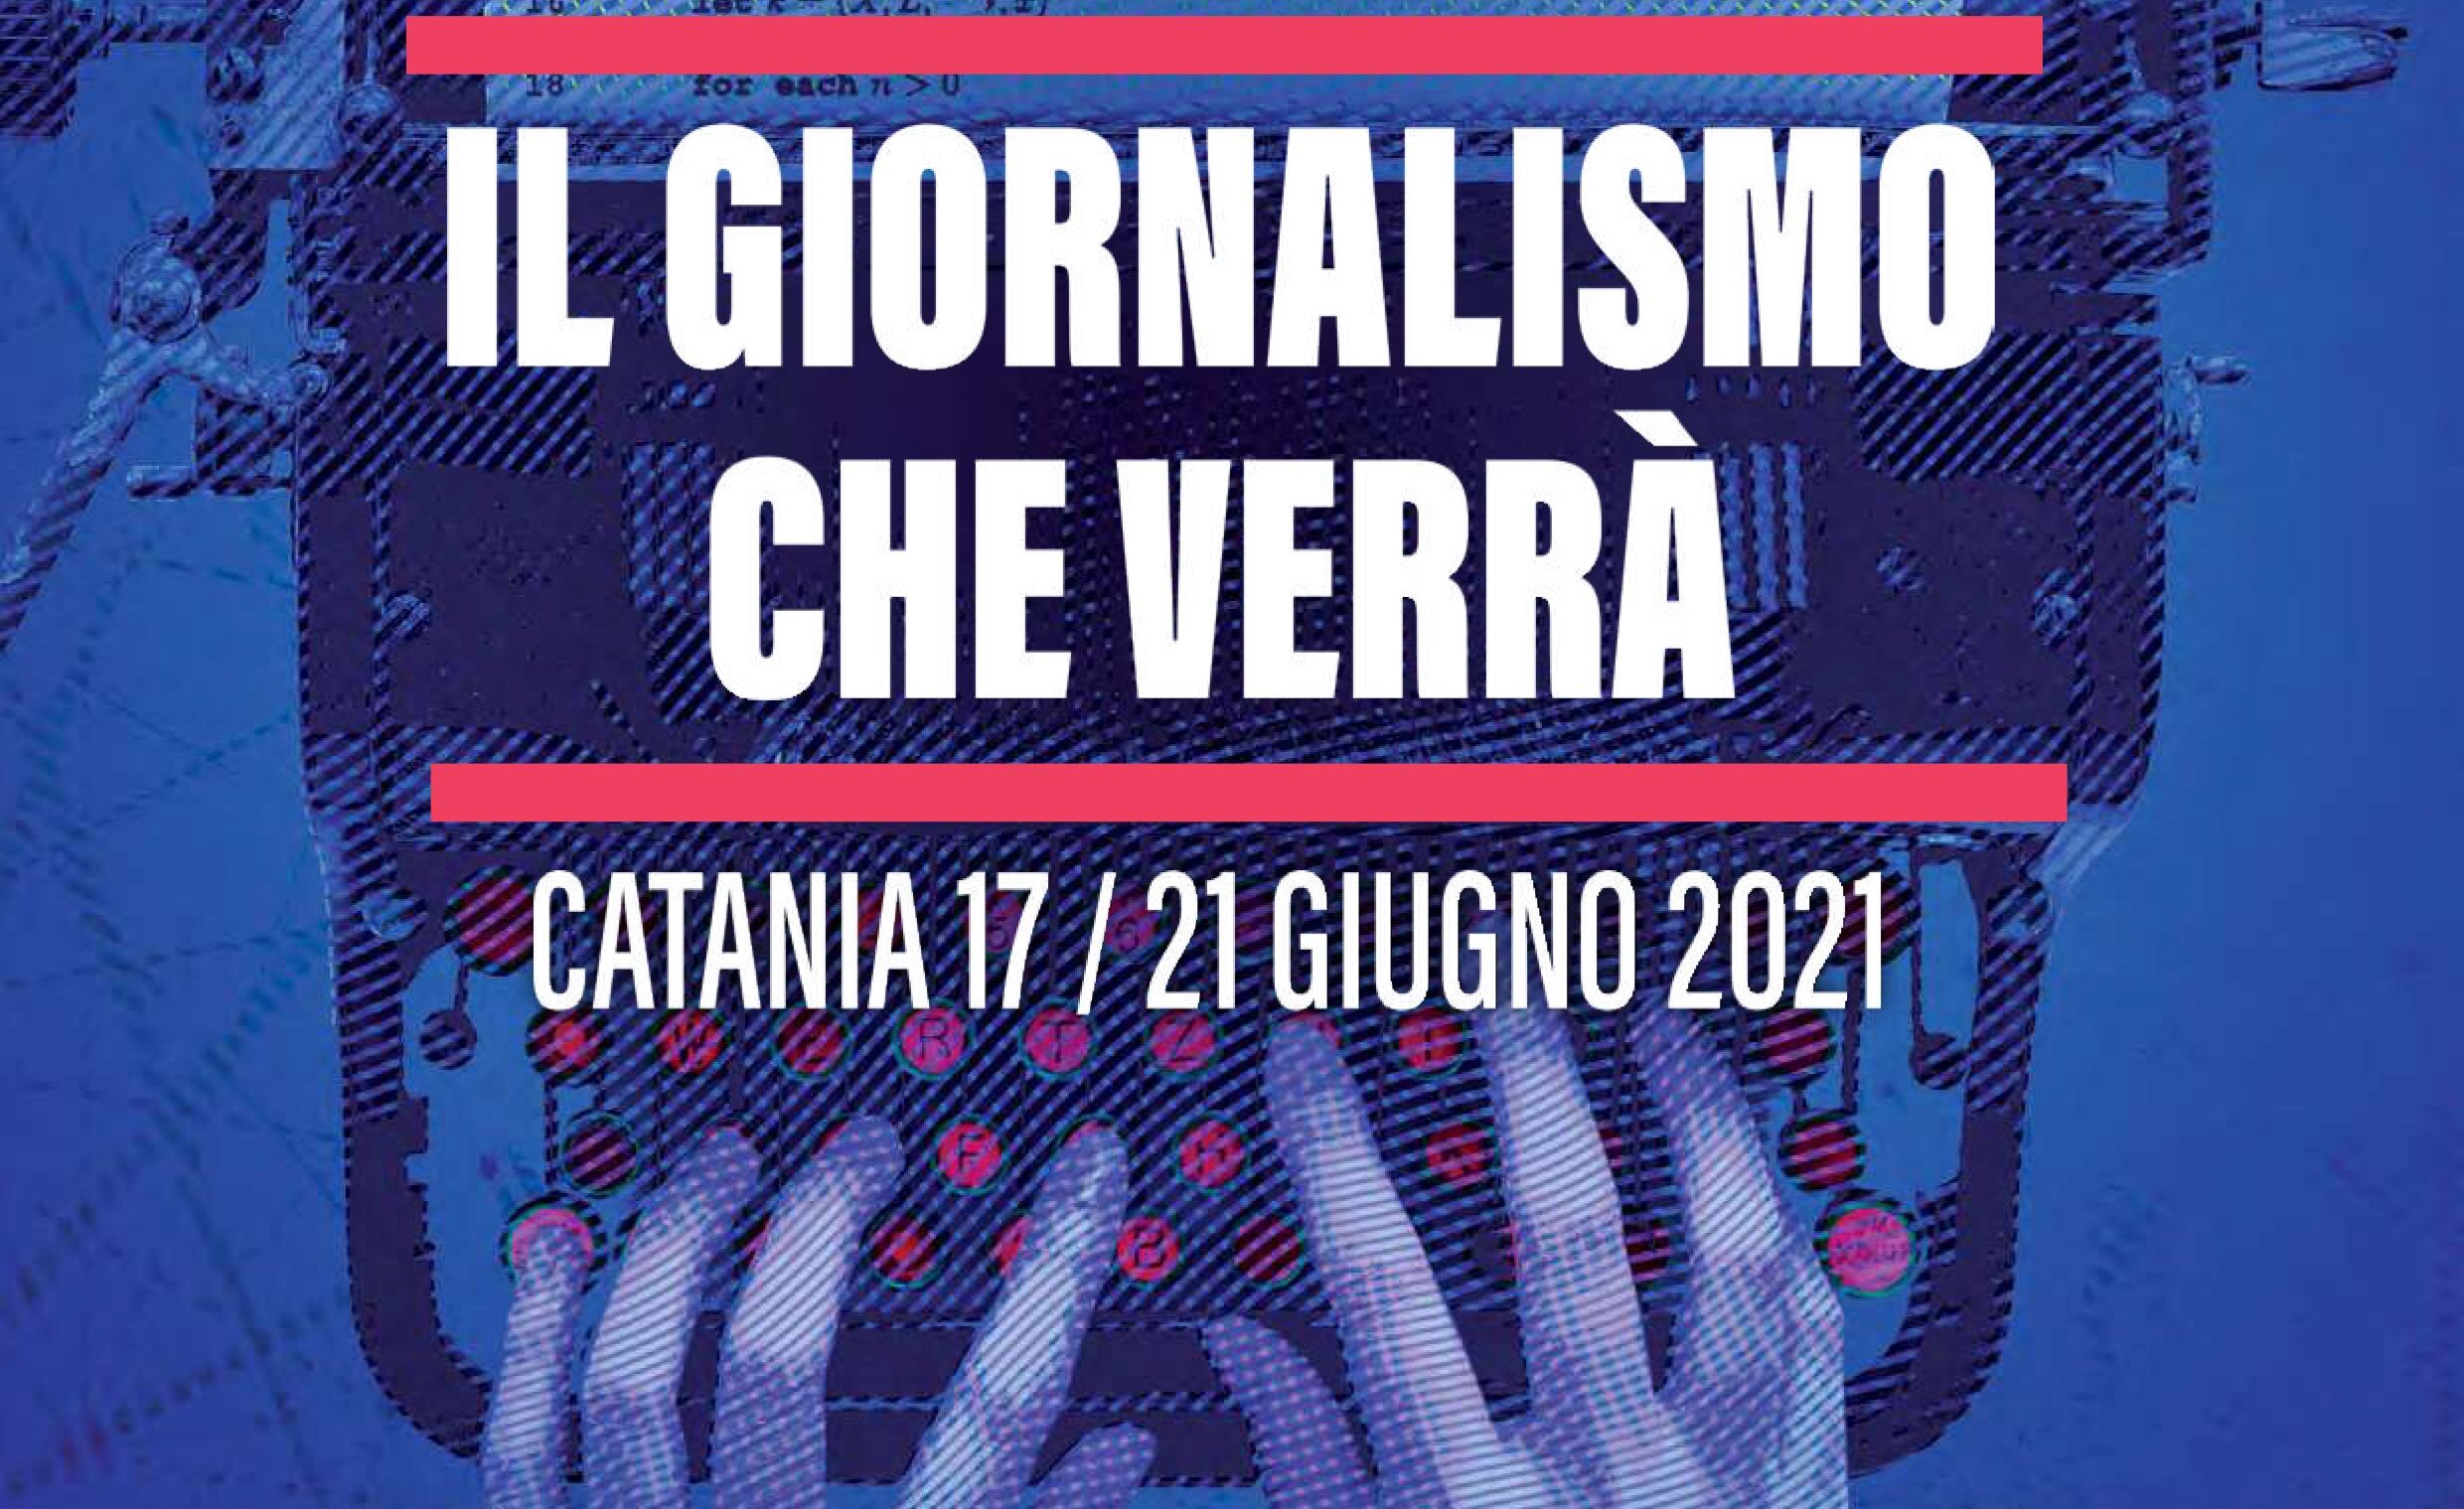 Il giornalismo che verrà, workshop a Catania